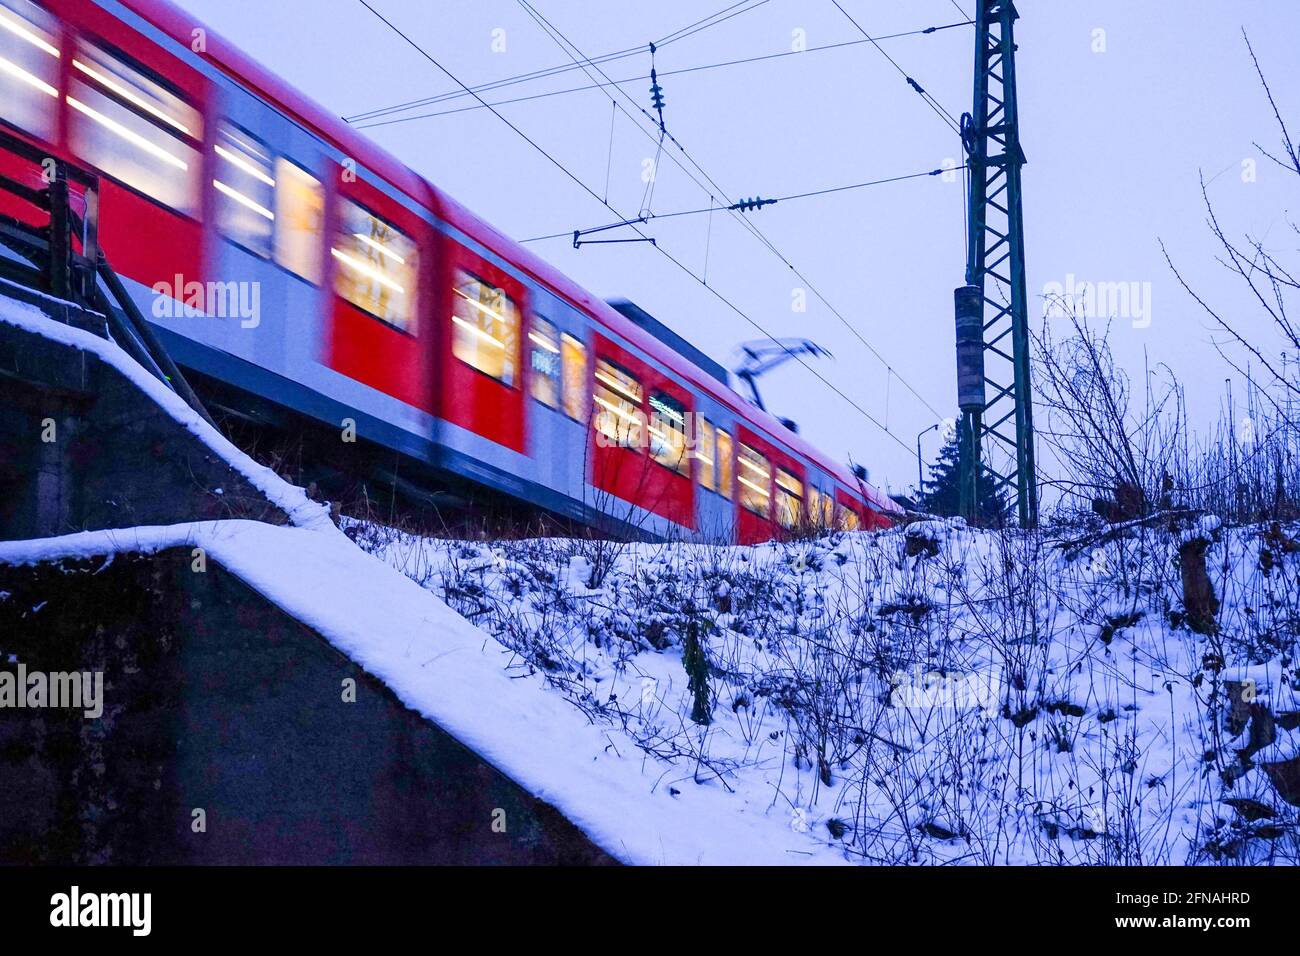 Eine schnell fahrende S-Bahn über eine Brücke in einer winterlichen Landschaft. Stockfoto